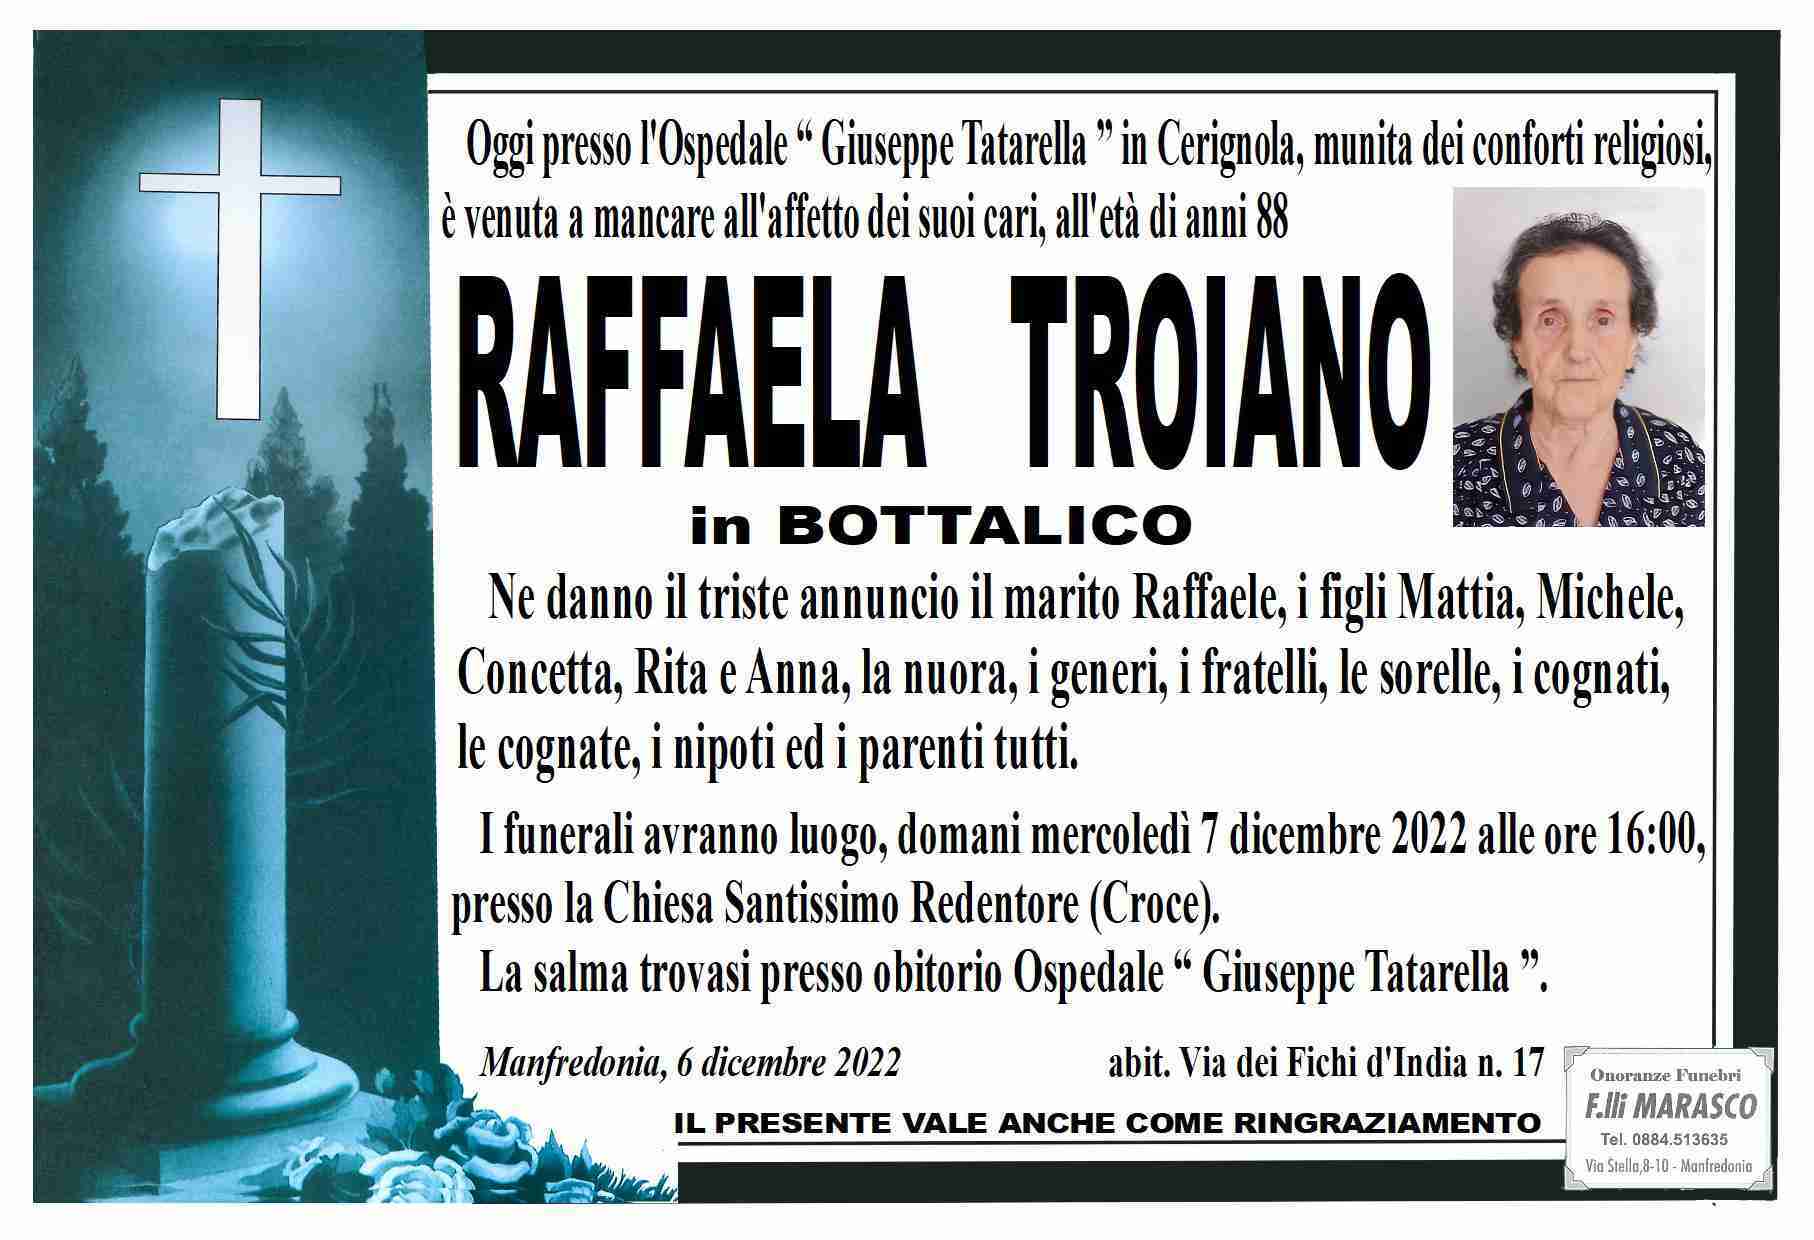 Raffaela Troiano